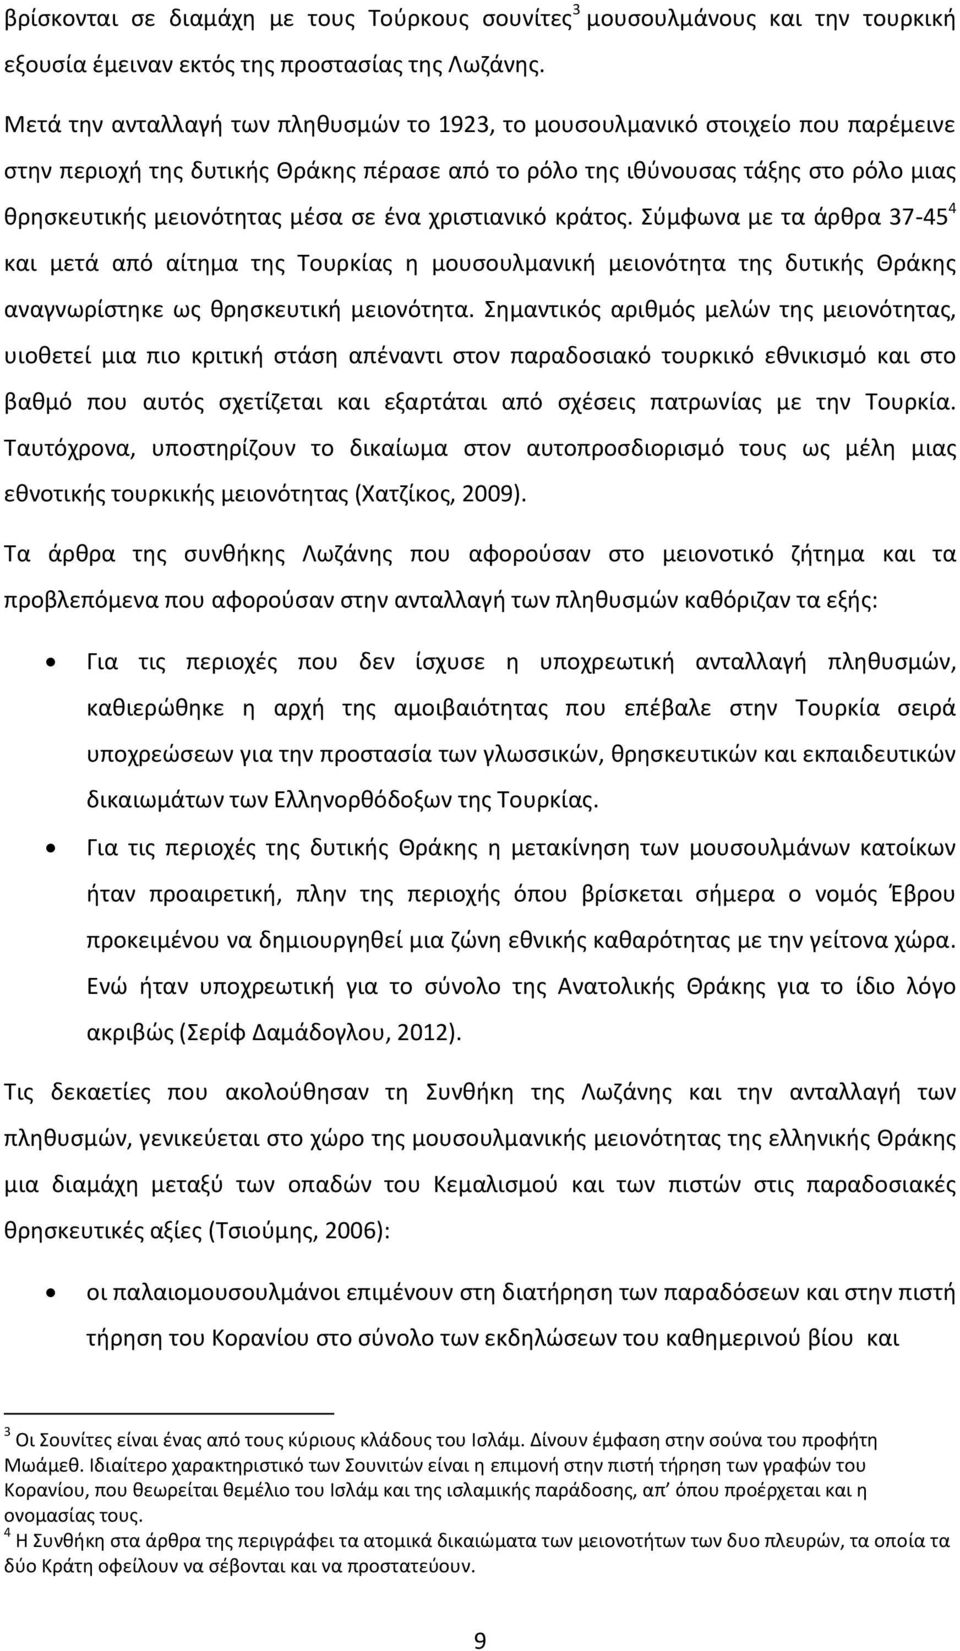 ένα χριστιανικό κράτος. Σύμφωνα με τα άρθρα 37-45 4 και μετά από αίτημα της Τουρκίας η μουσουλμανική μειονότητα της δυτικής Θράκης αναγνωρίστηκε ως θρησκευτική μειονότητα.